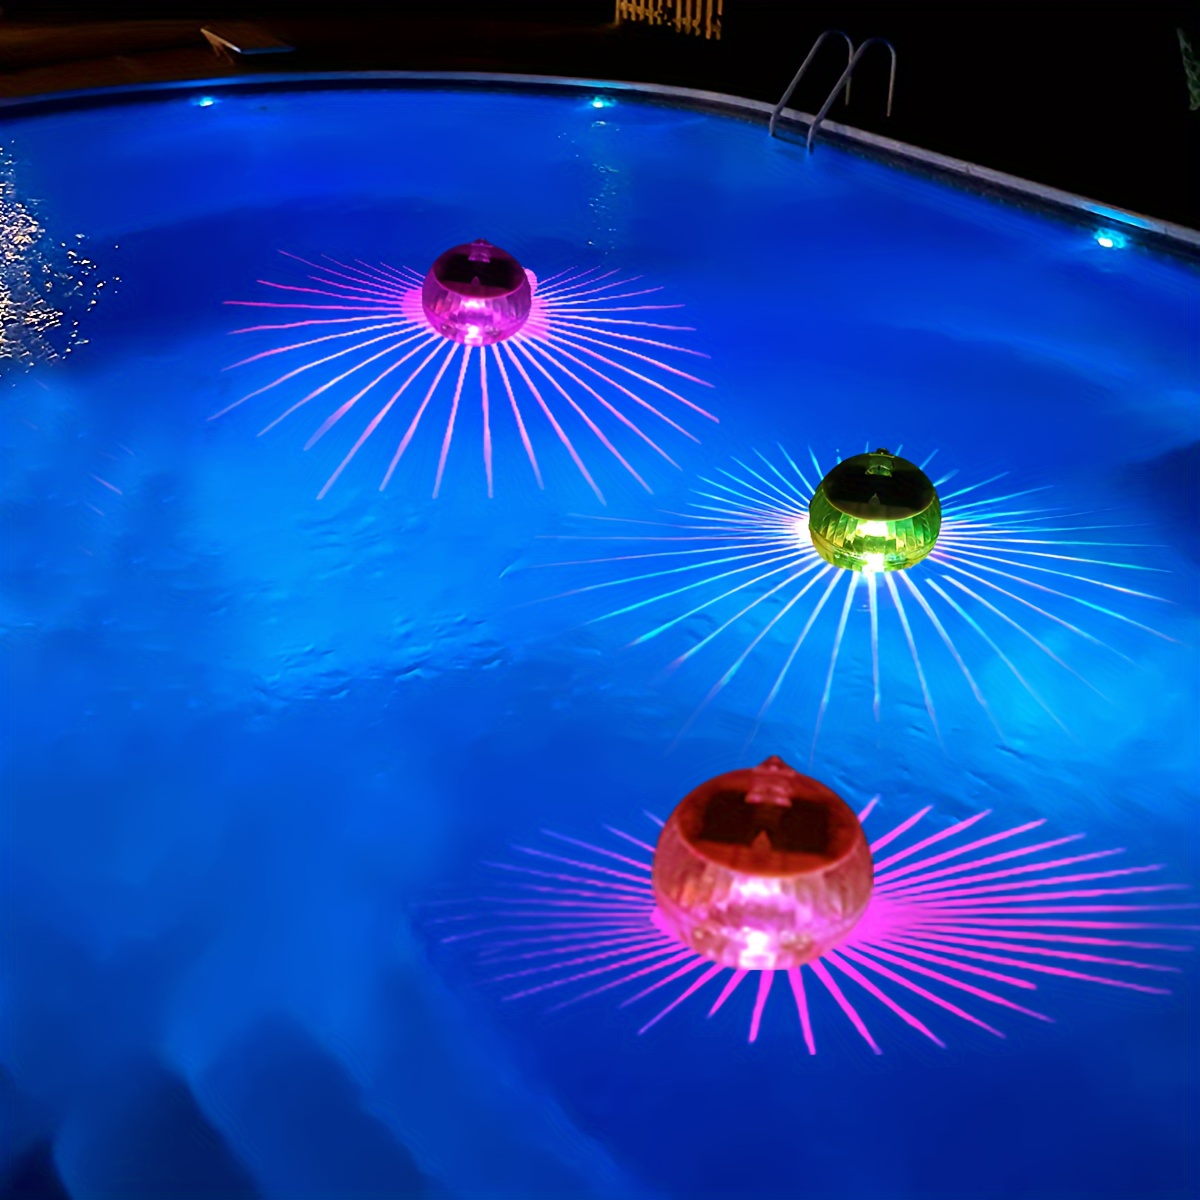 Ultra Night Floating Pool Light,2 Pack Solar Pool Light, 4 Mode